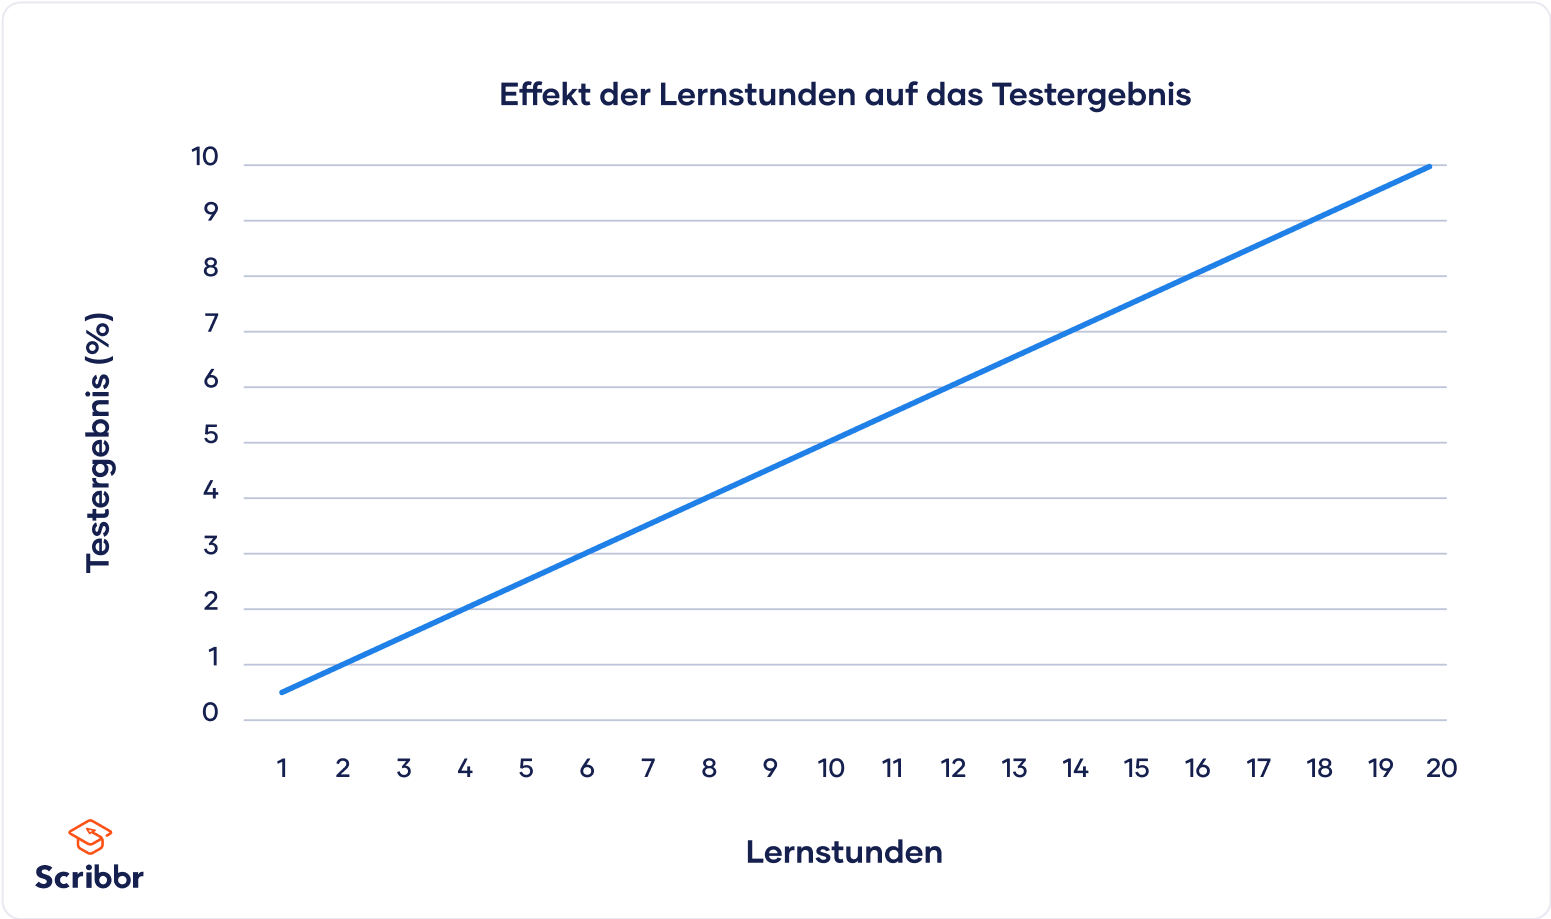 Abbildung 1: Effekt der Lernstunden auf das Testergebnis